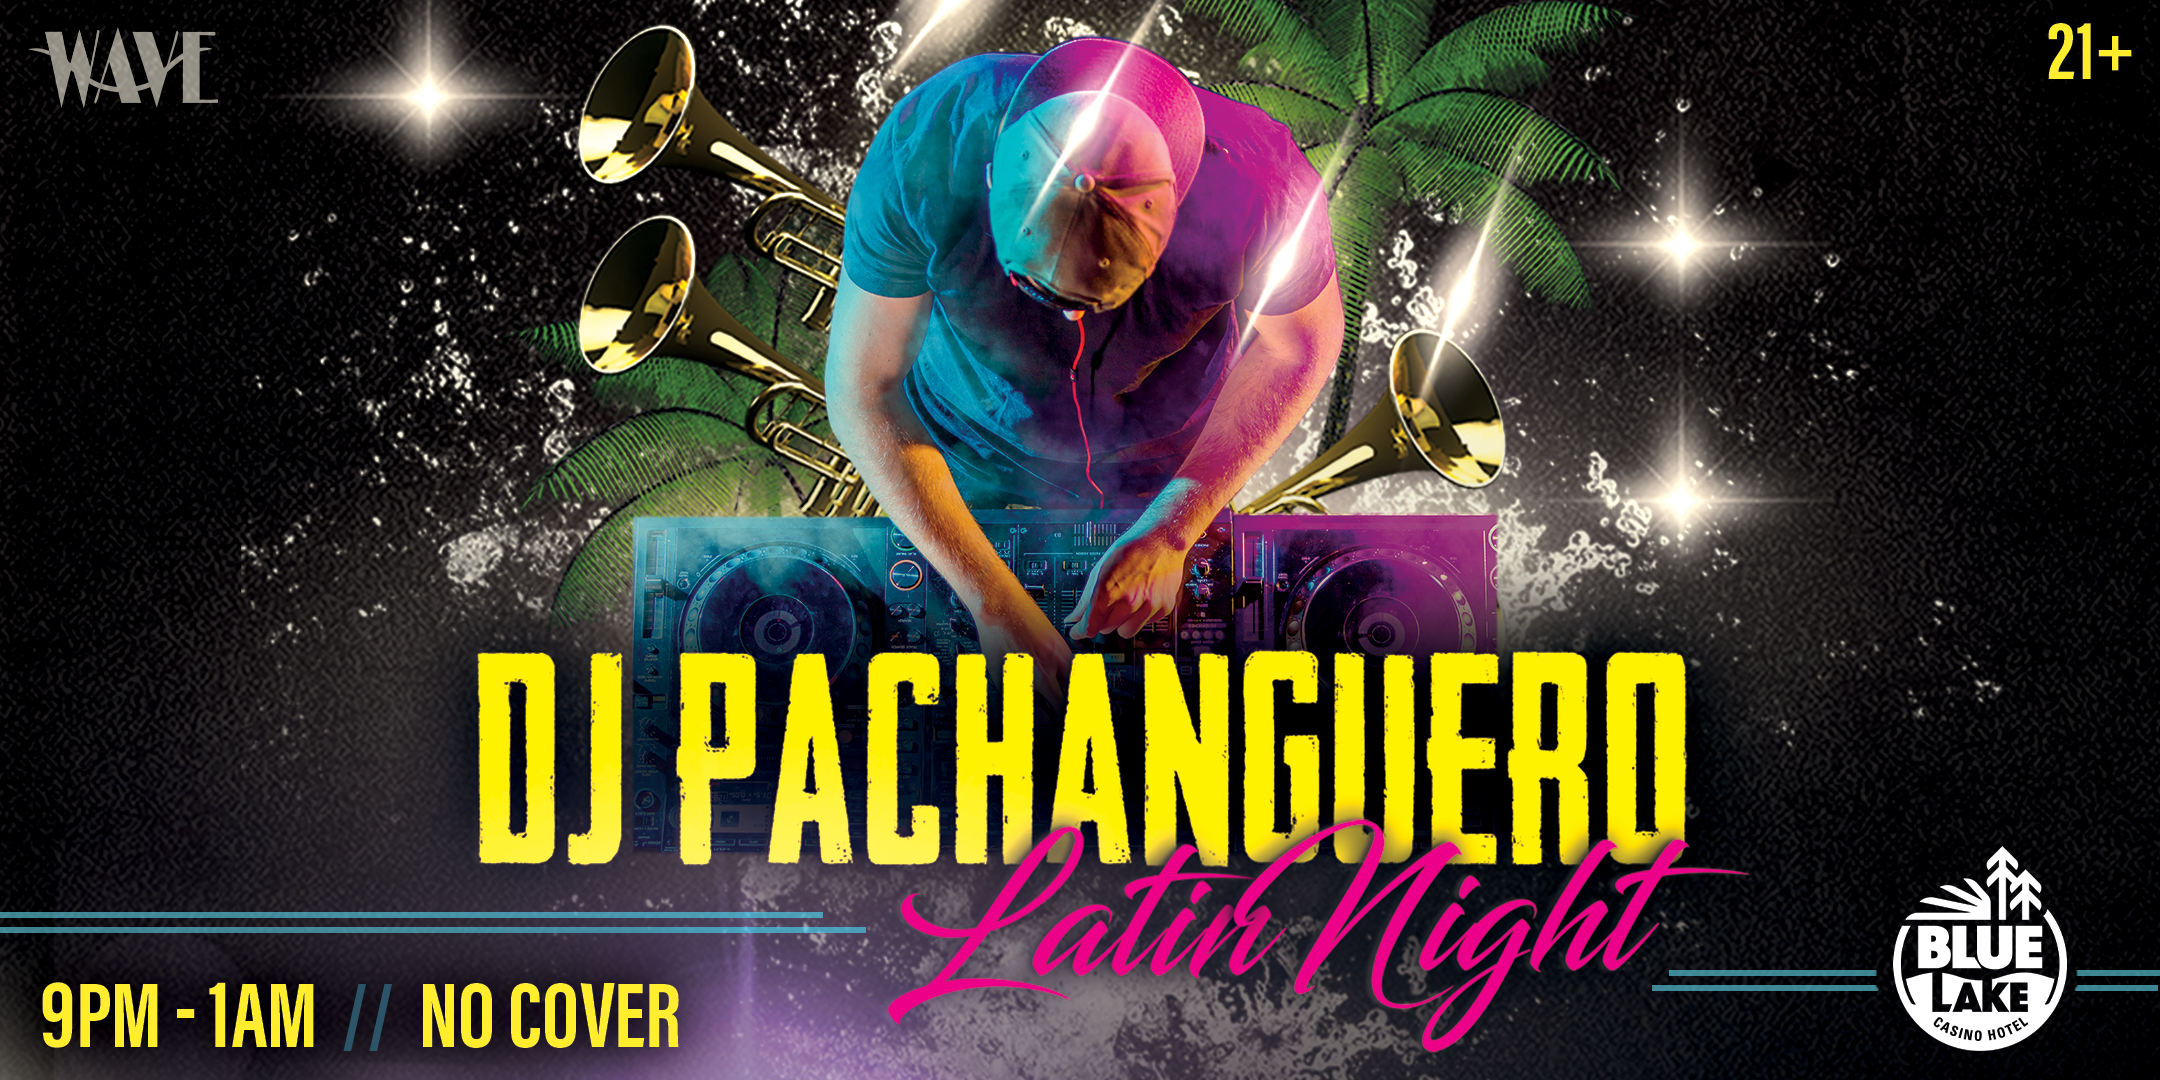 2160x1080 DJ Pachanguero Latin Nights